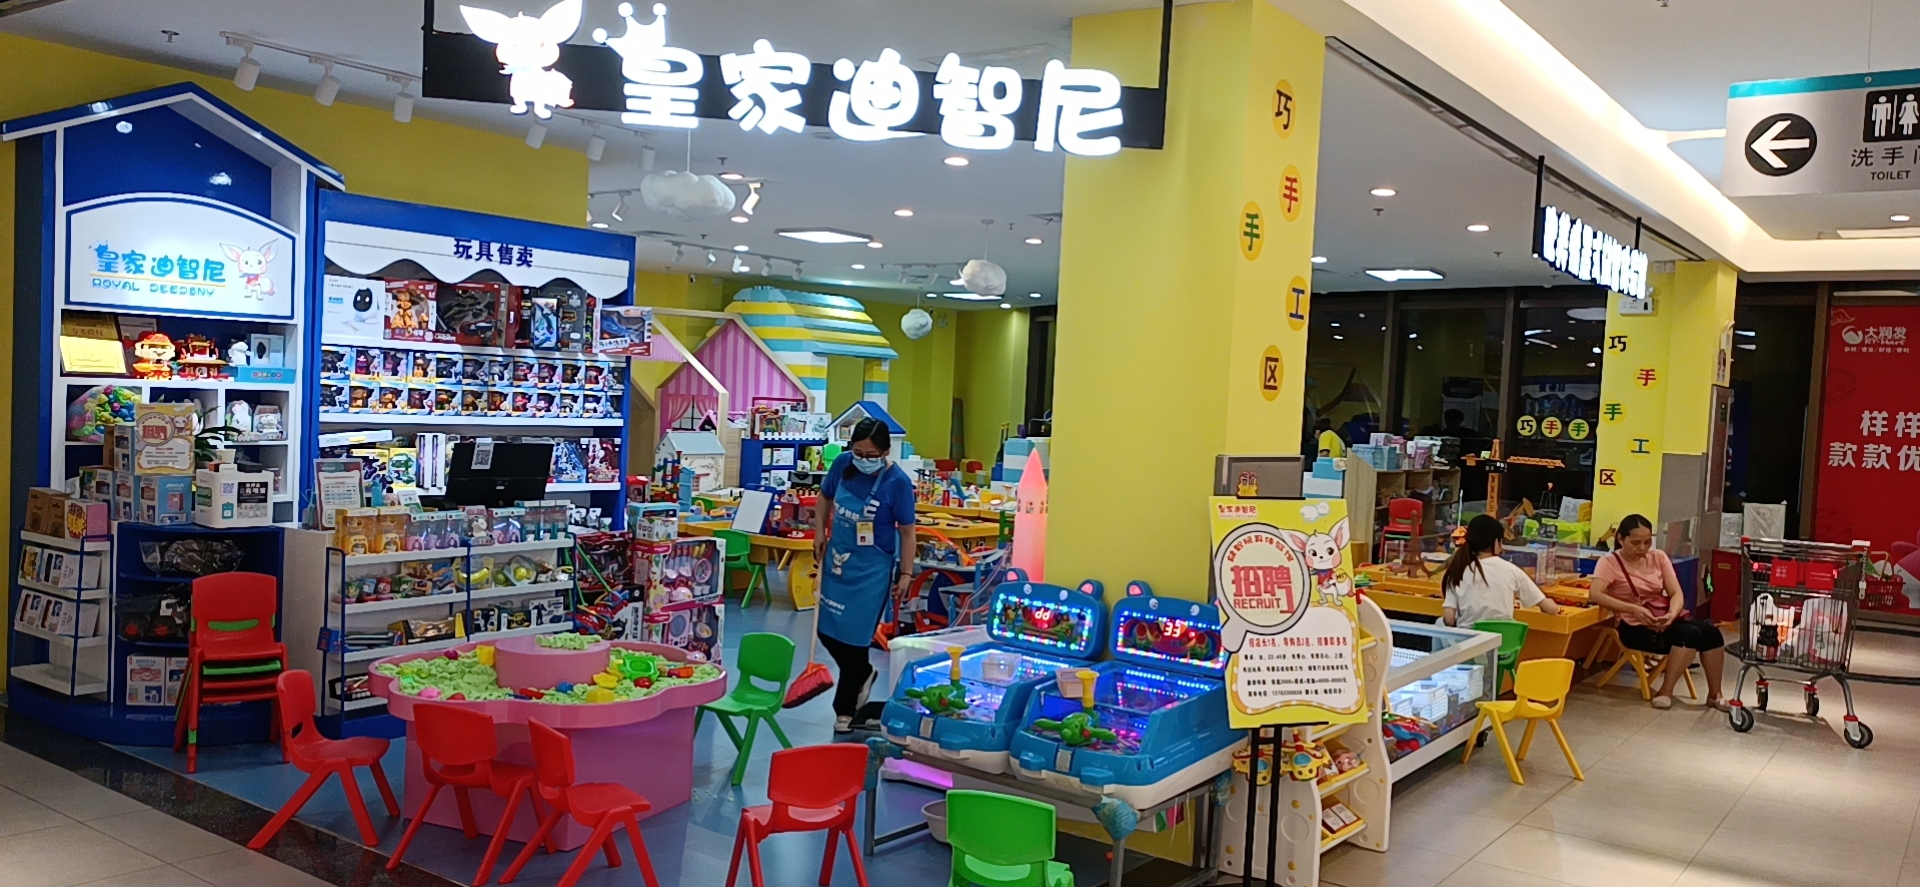 开一家皇家迪智尼儿童玩具加盟店需要多少钱?